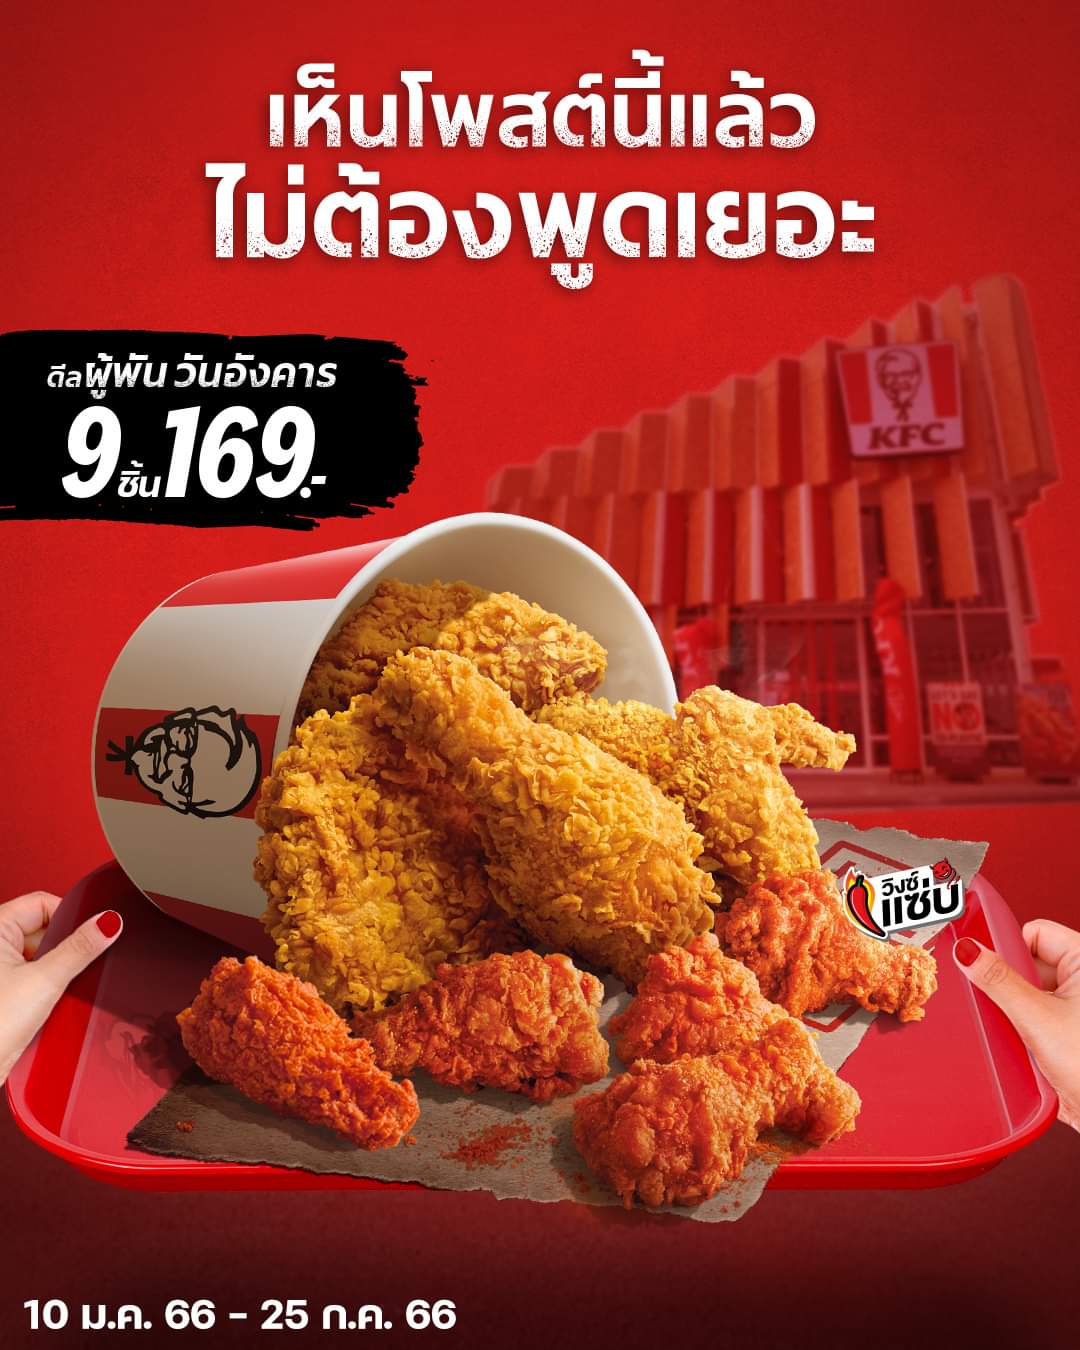 โปรโมชั่น เคเอฟซี : KFC ดีลผู้พันวันอังคาร ไก่ตั้ง 9 ชิ้น ราคาฟินๆ 169 บาท